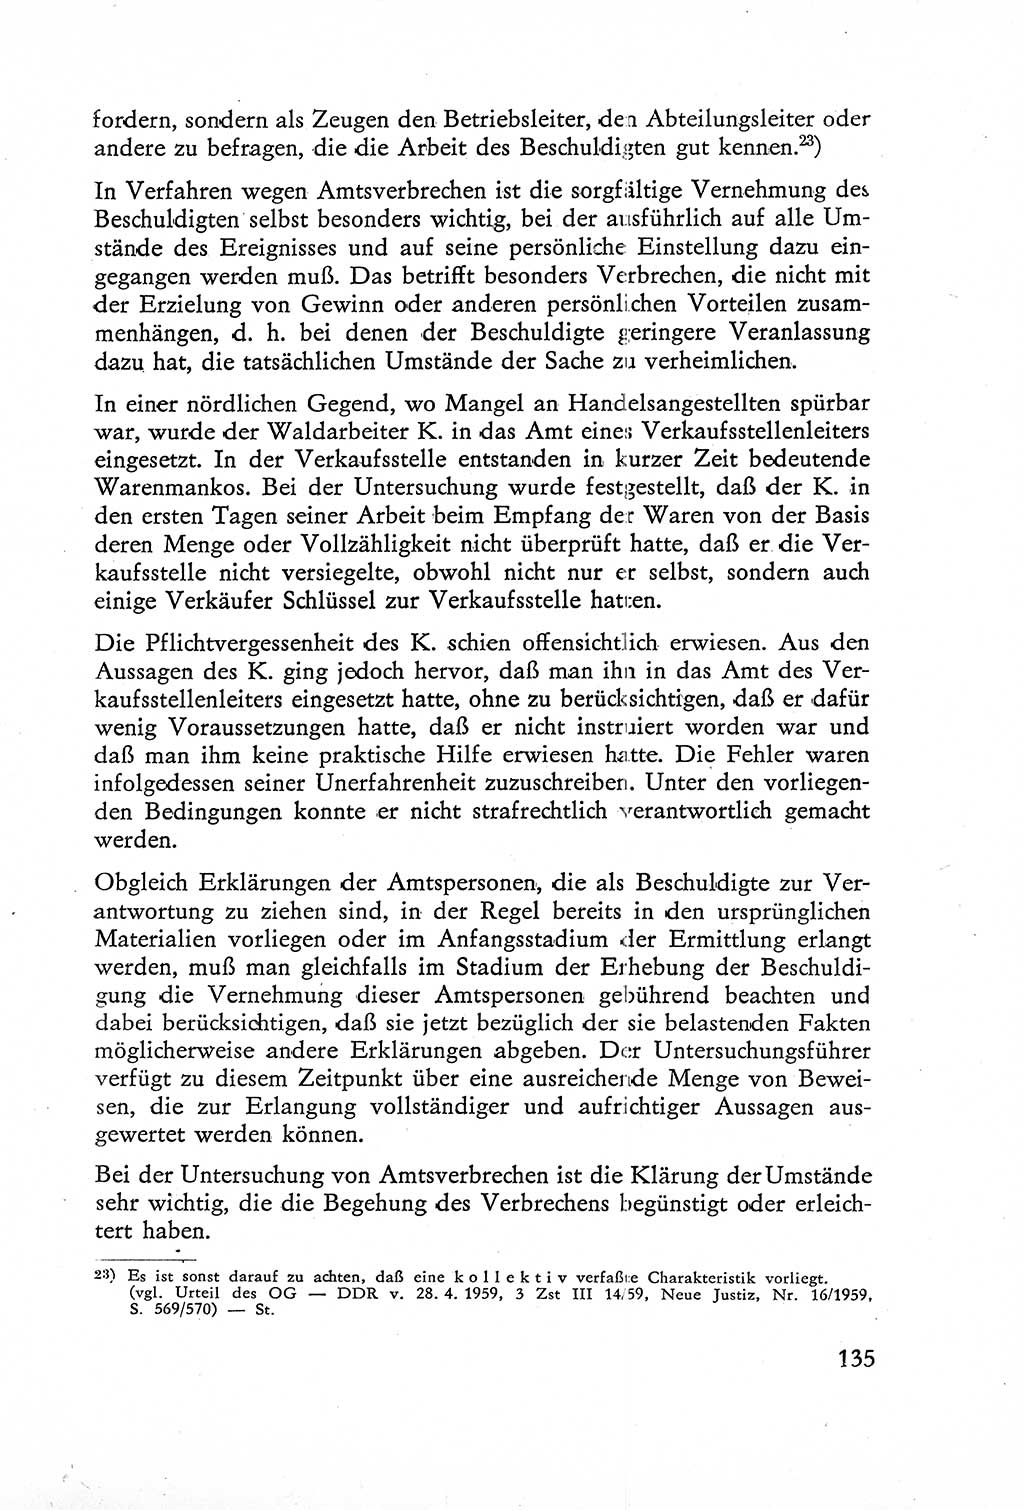 Die Untersuchung einzelner Verbrechensarten [Deutsche Demokratische Republik (DDR)] 1960, Seite 135 (Unters. Verbr.-Art. DDR 1960, S. 135)